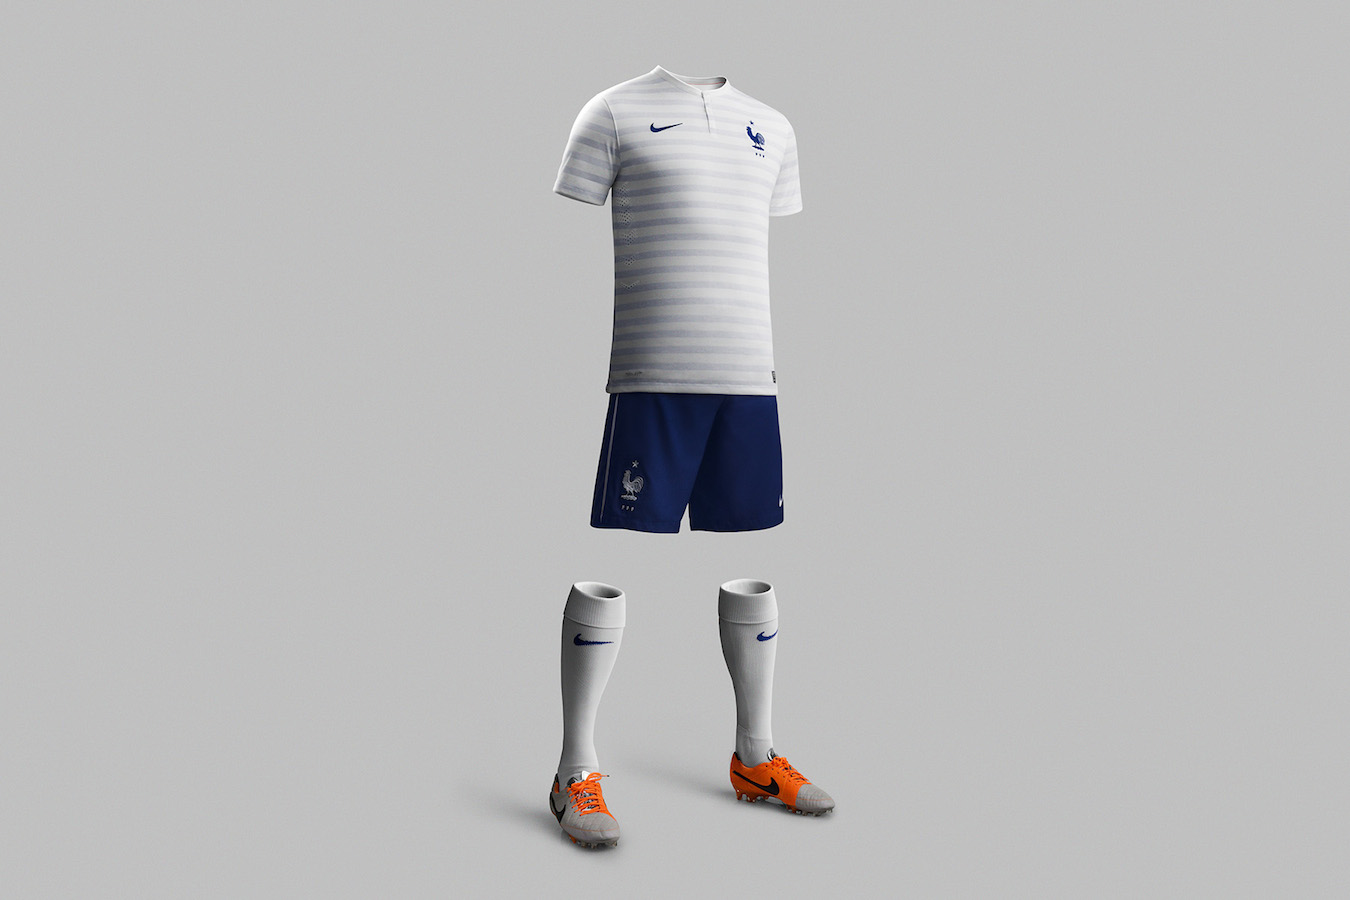 Maillot Nike Equipe de France FFF 2014 Mondial Bresil